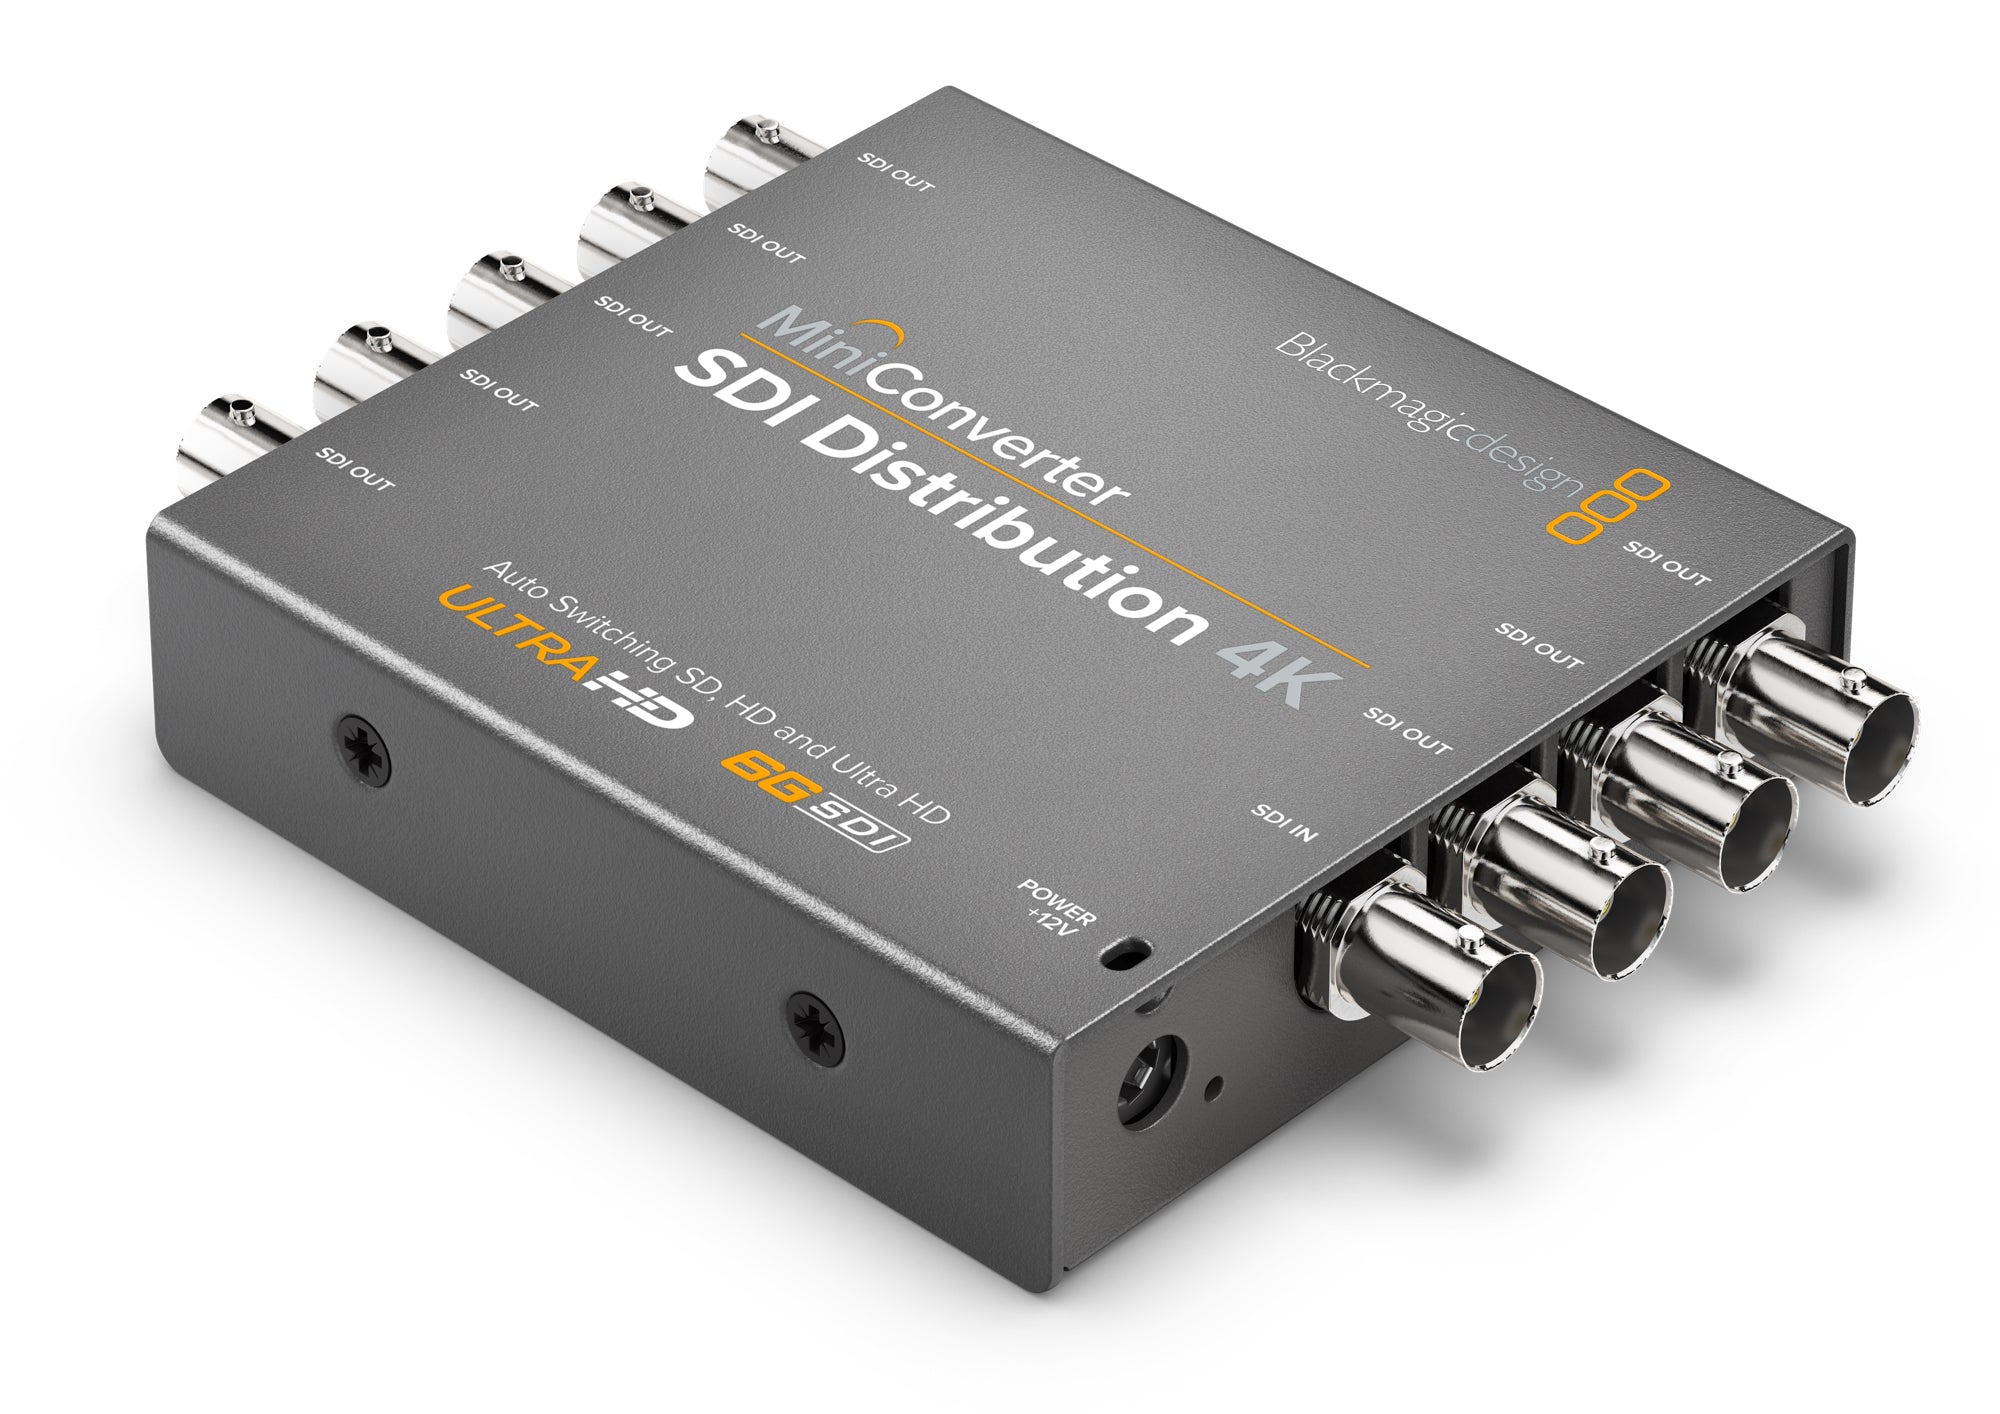 Blackmagic Design Mini Converter - SDI Distribution 4K